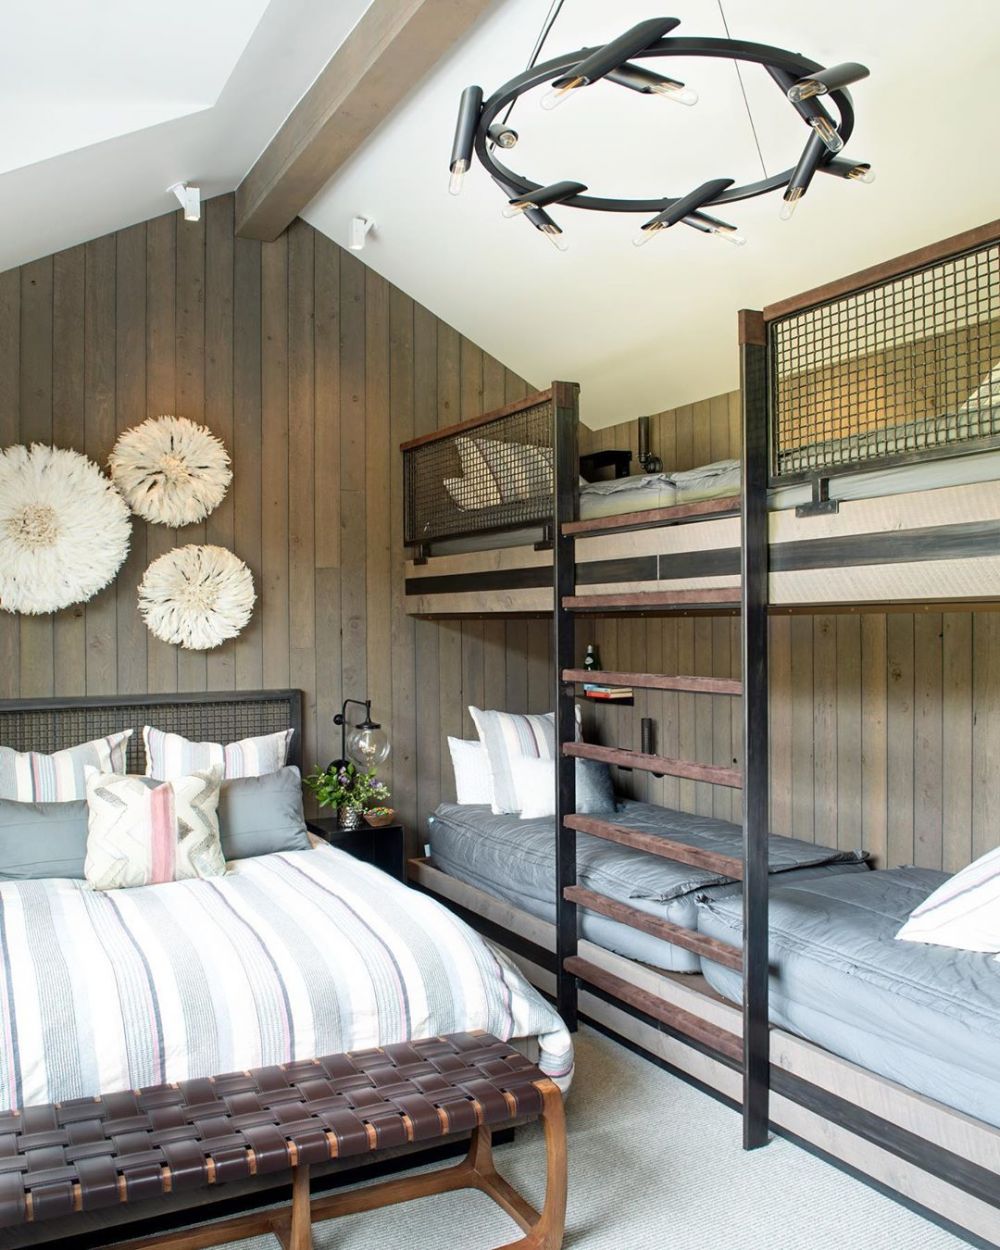 10 Desain Kamar Tidur Dengan Bunk Bed, Bikin Tambah Cozy!